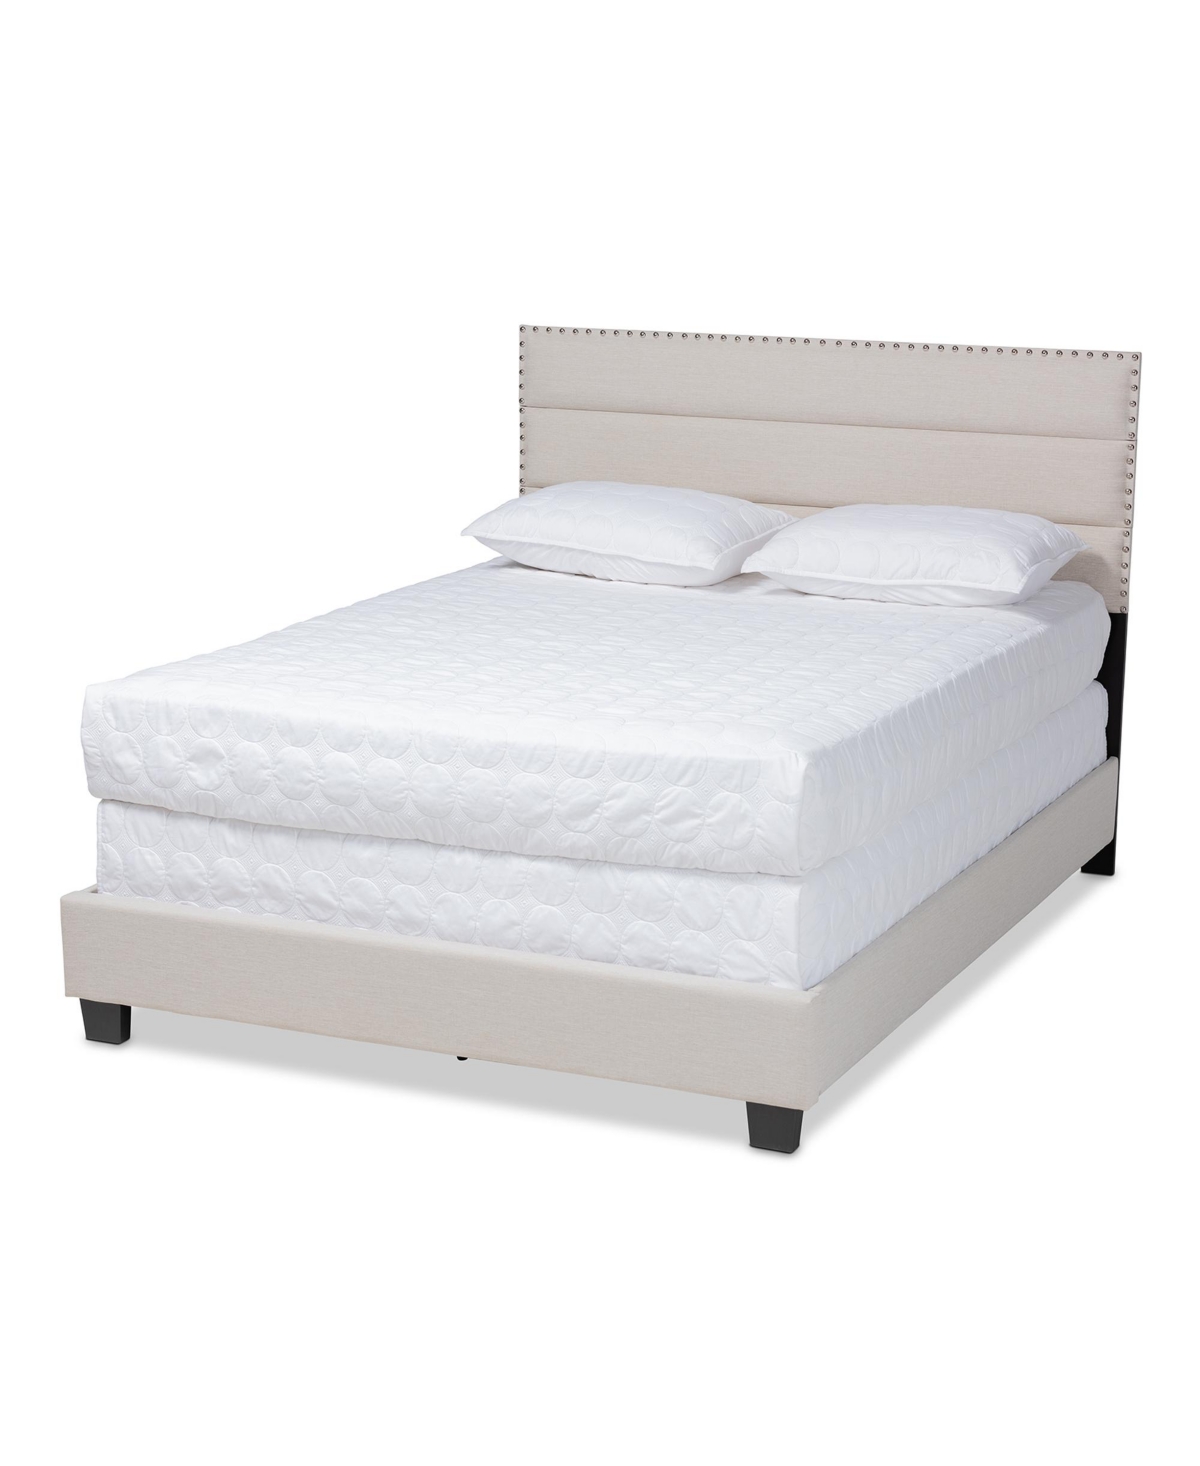 10426669 Ansa Fabric Headboard Platform Queen Size Bed sku 10426669